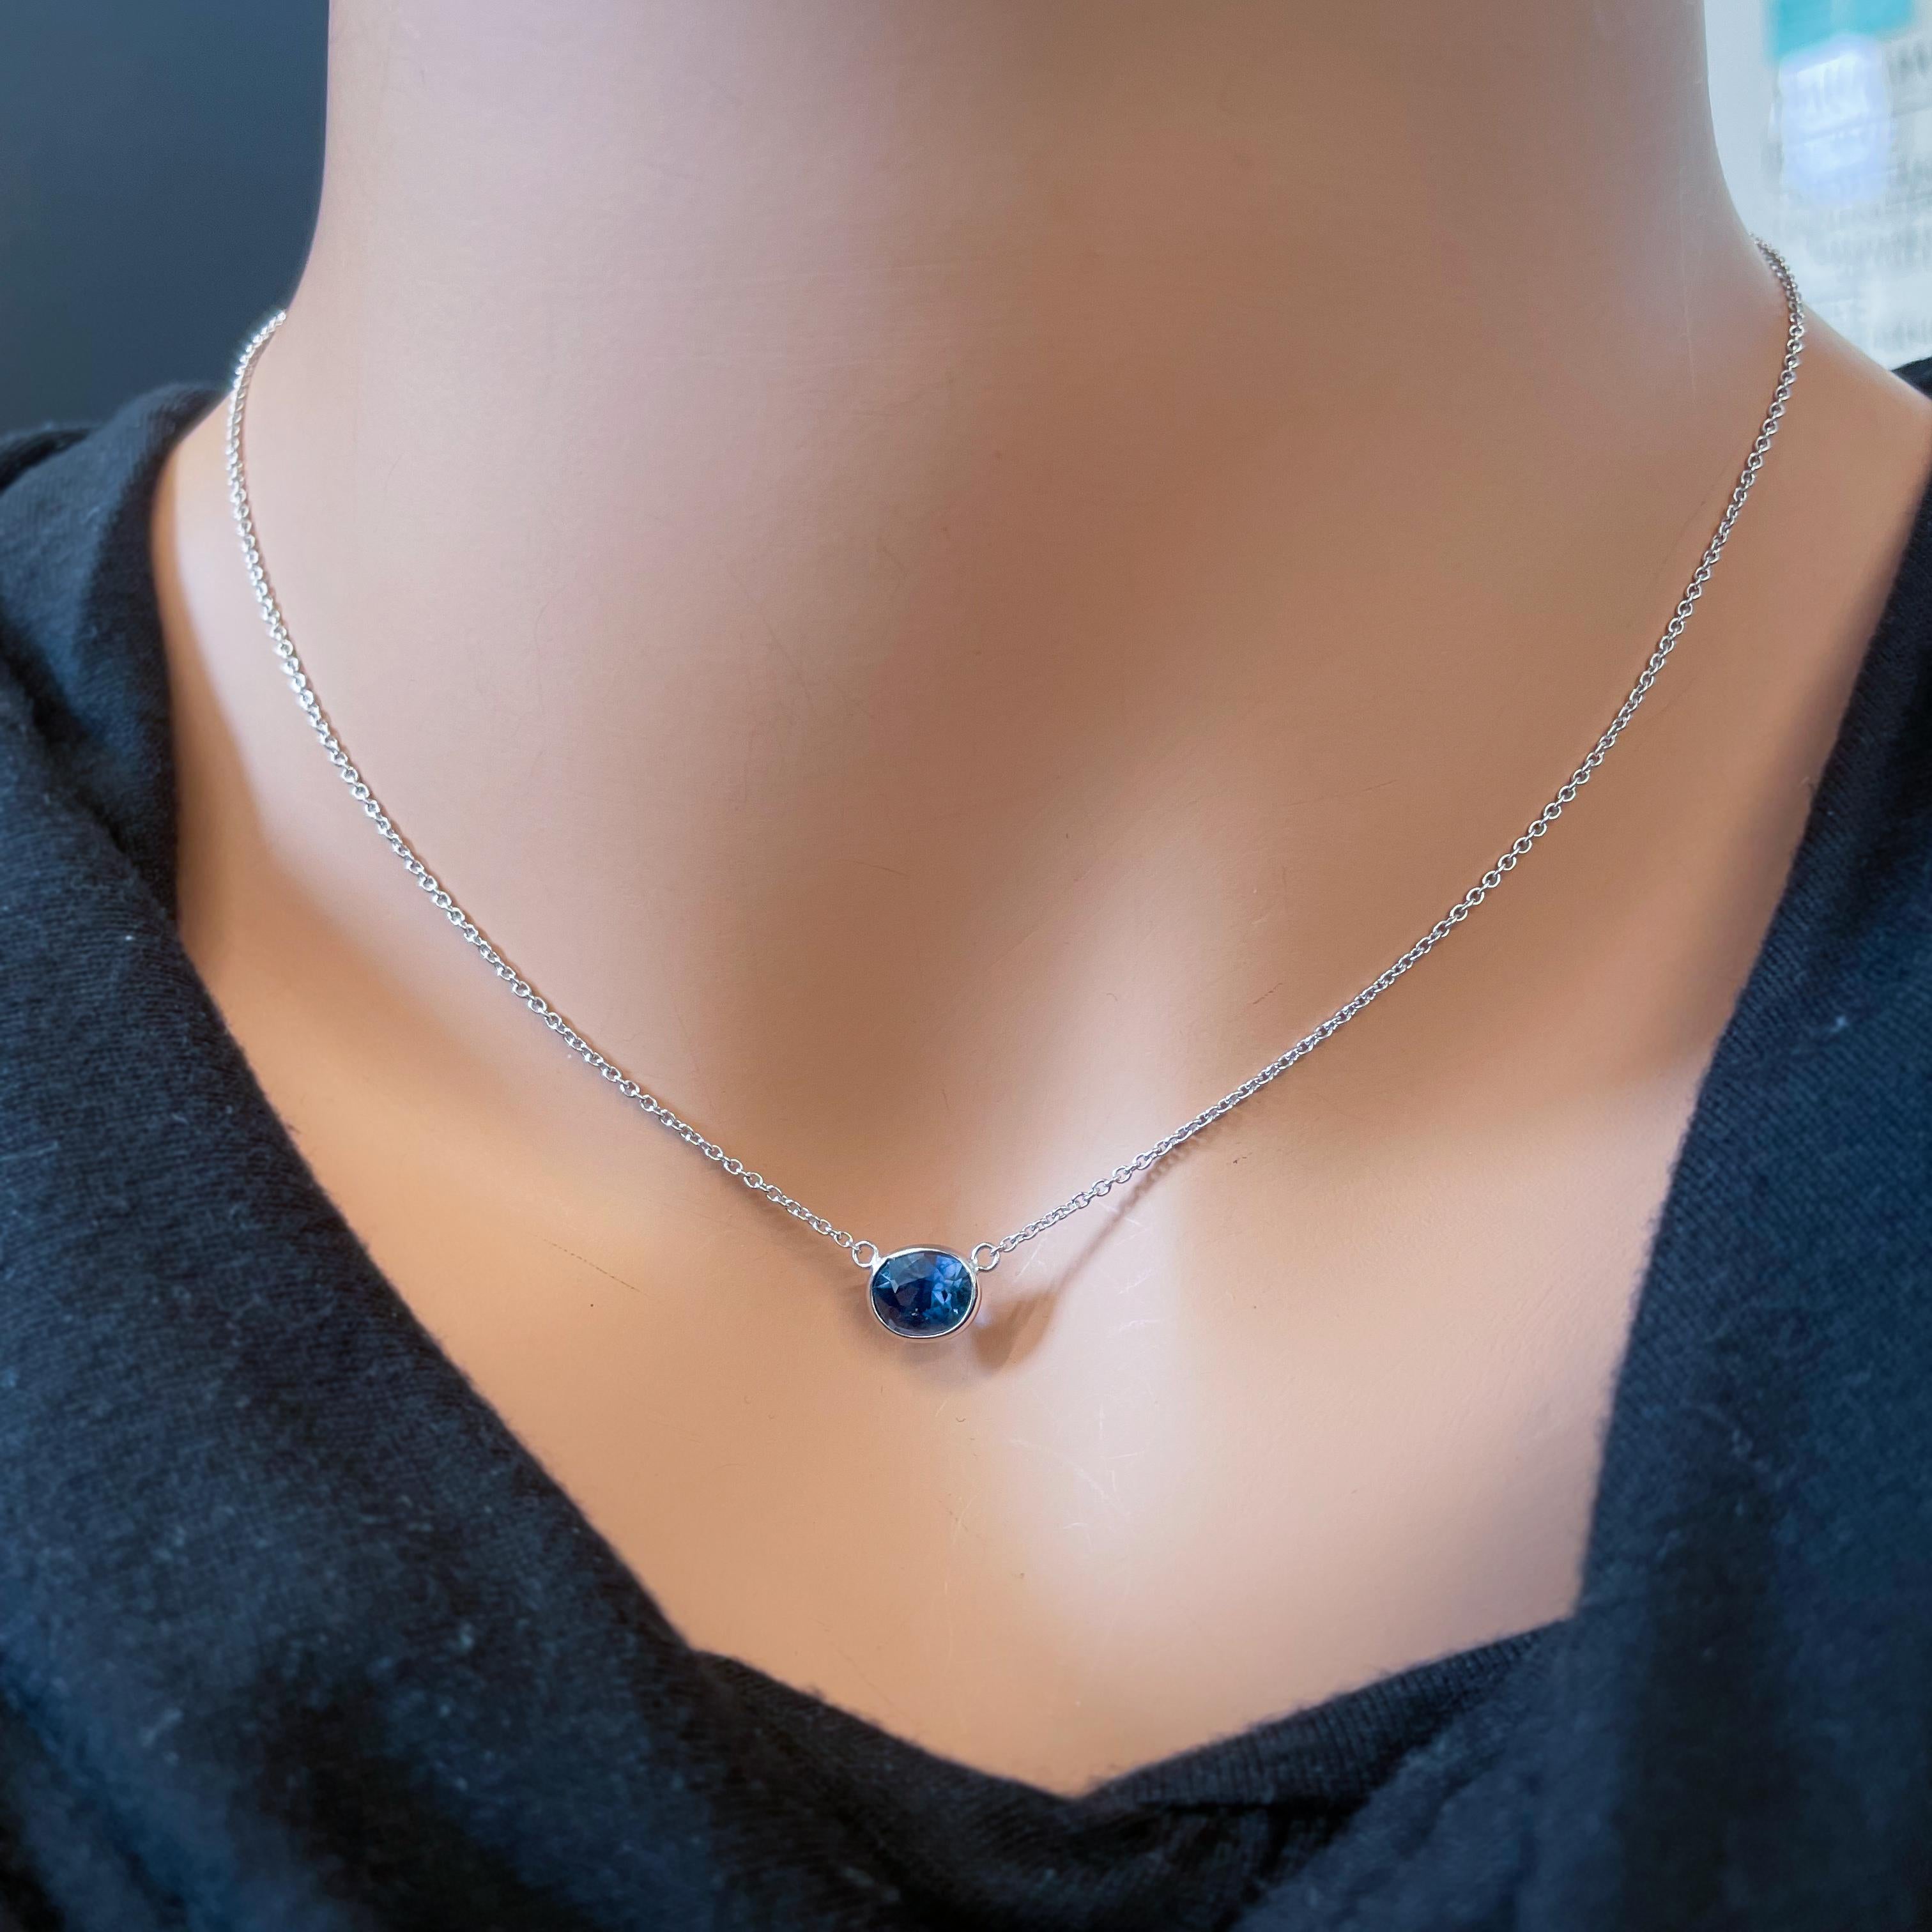 Ce collier présente un saphir bleu de taille ovale d'un poids de 1,99 carats, serti dans de l'or blanc 14k (Whiting). Les saphirs bleus sont réputés pour leur couleur bleue riche et vibrante, et la taille ovale est un choix classique pour les